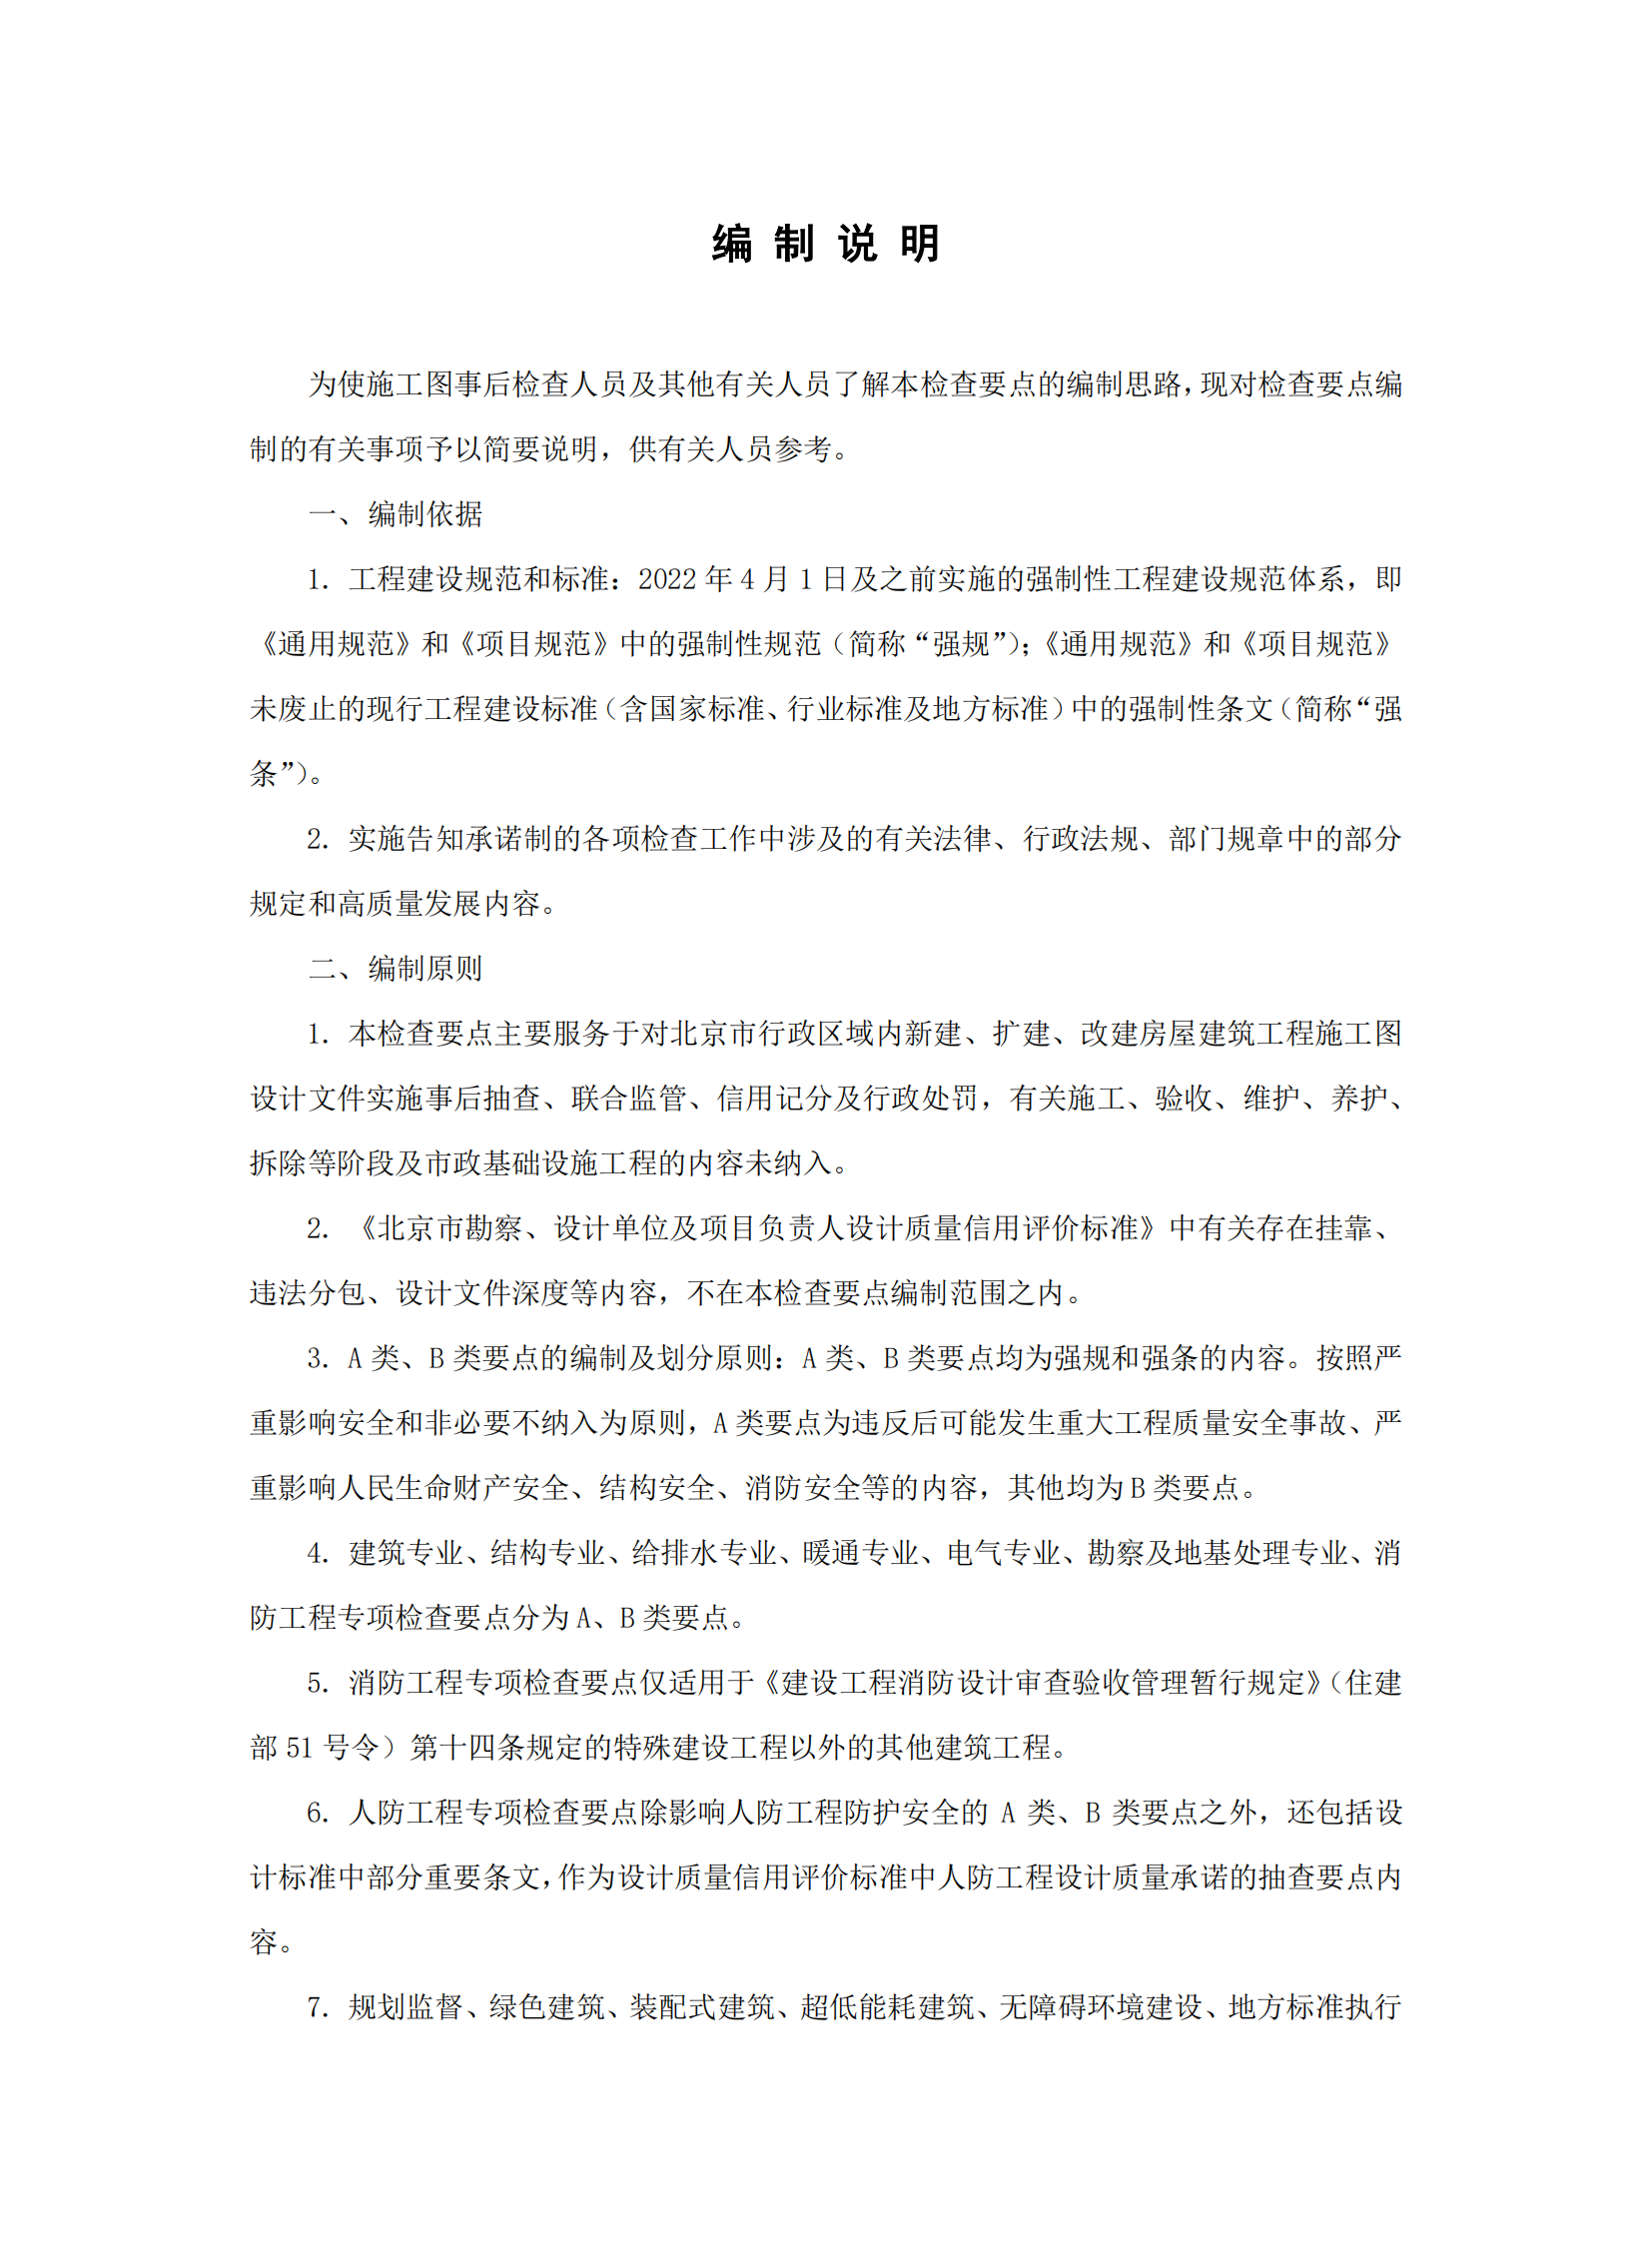 北京市房屋建筑工程施工图事后检查要点（上下册）插图(4)